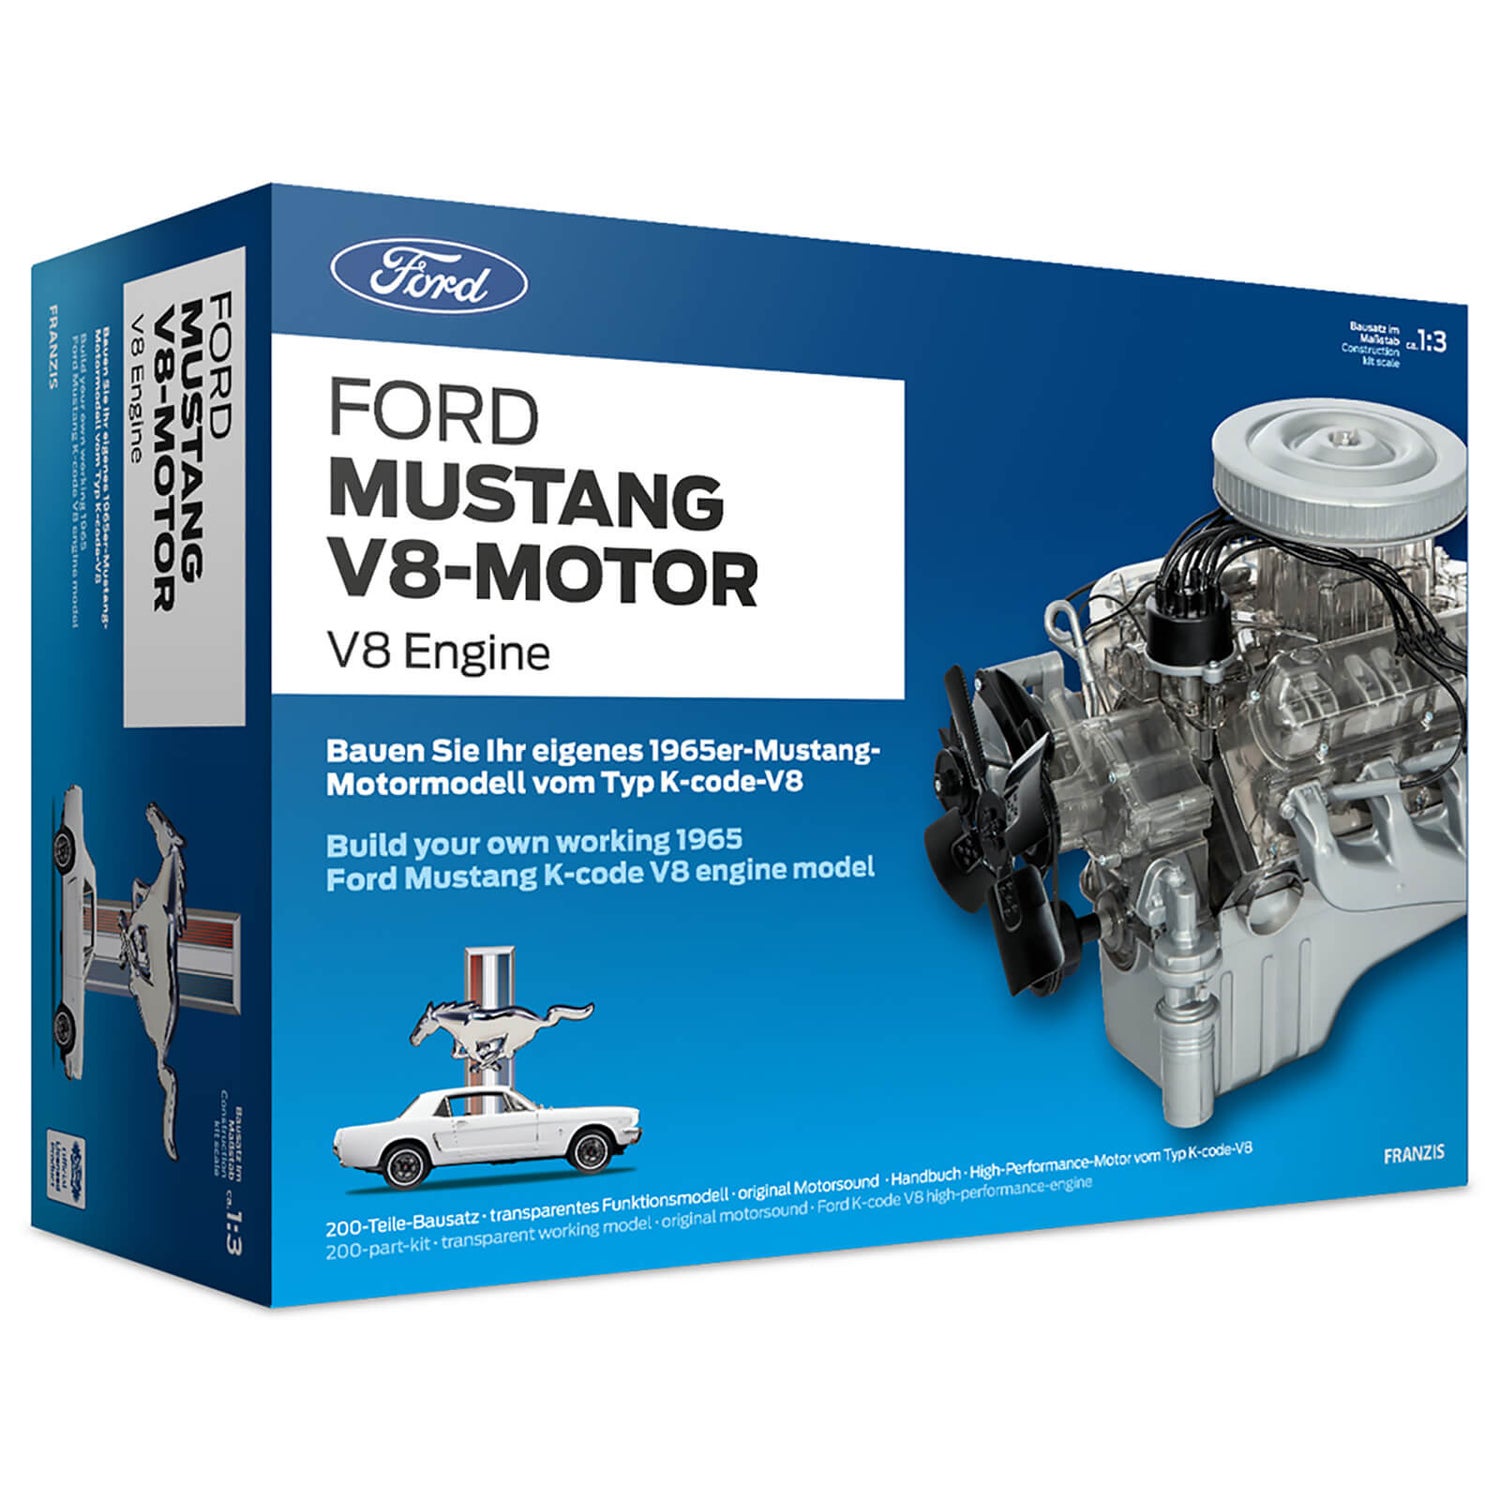 Franzis Official Ford Mustang V8-Motor